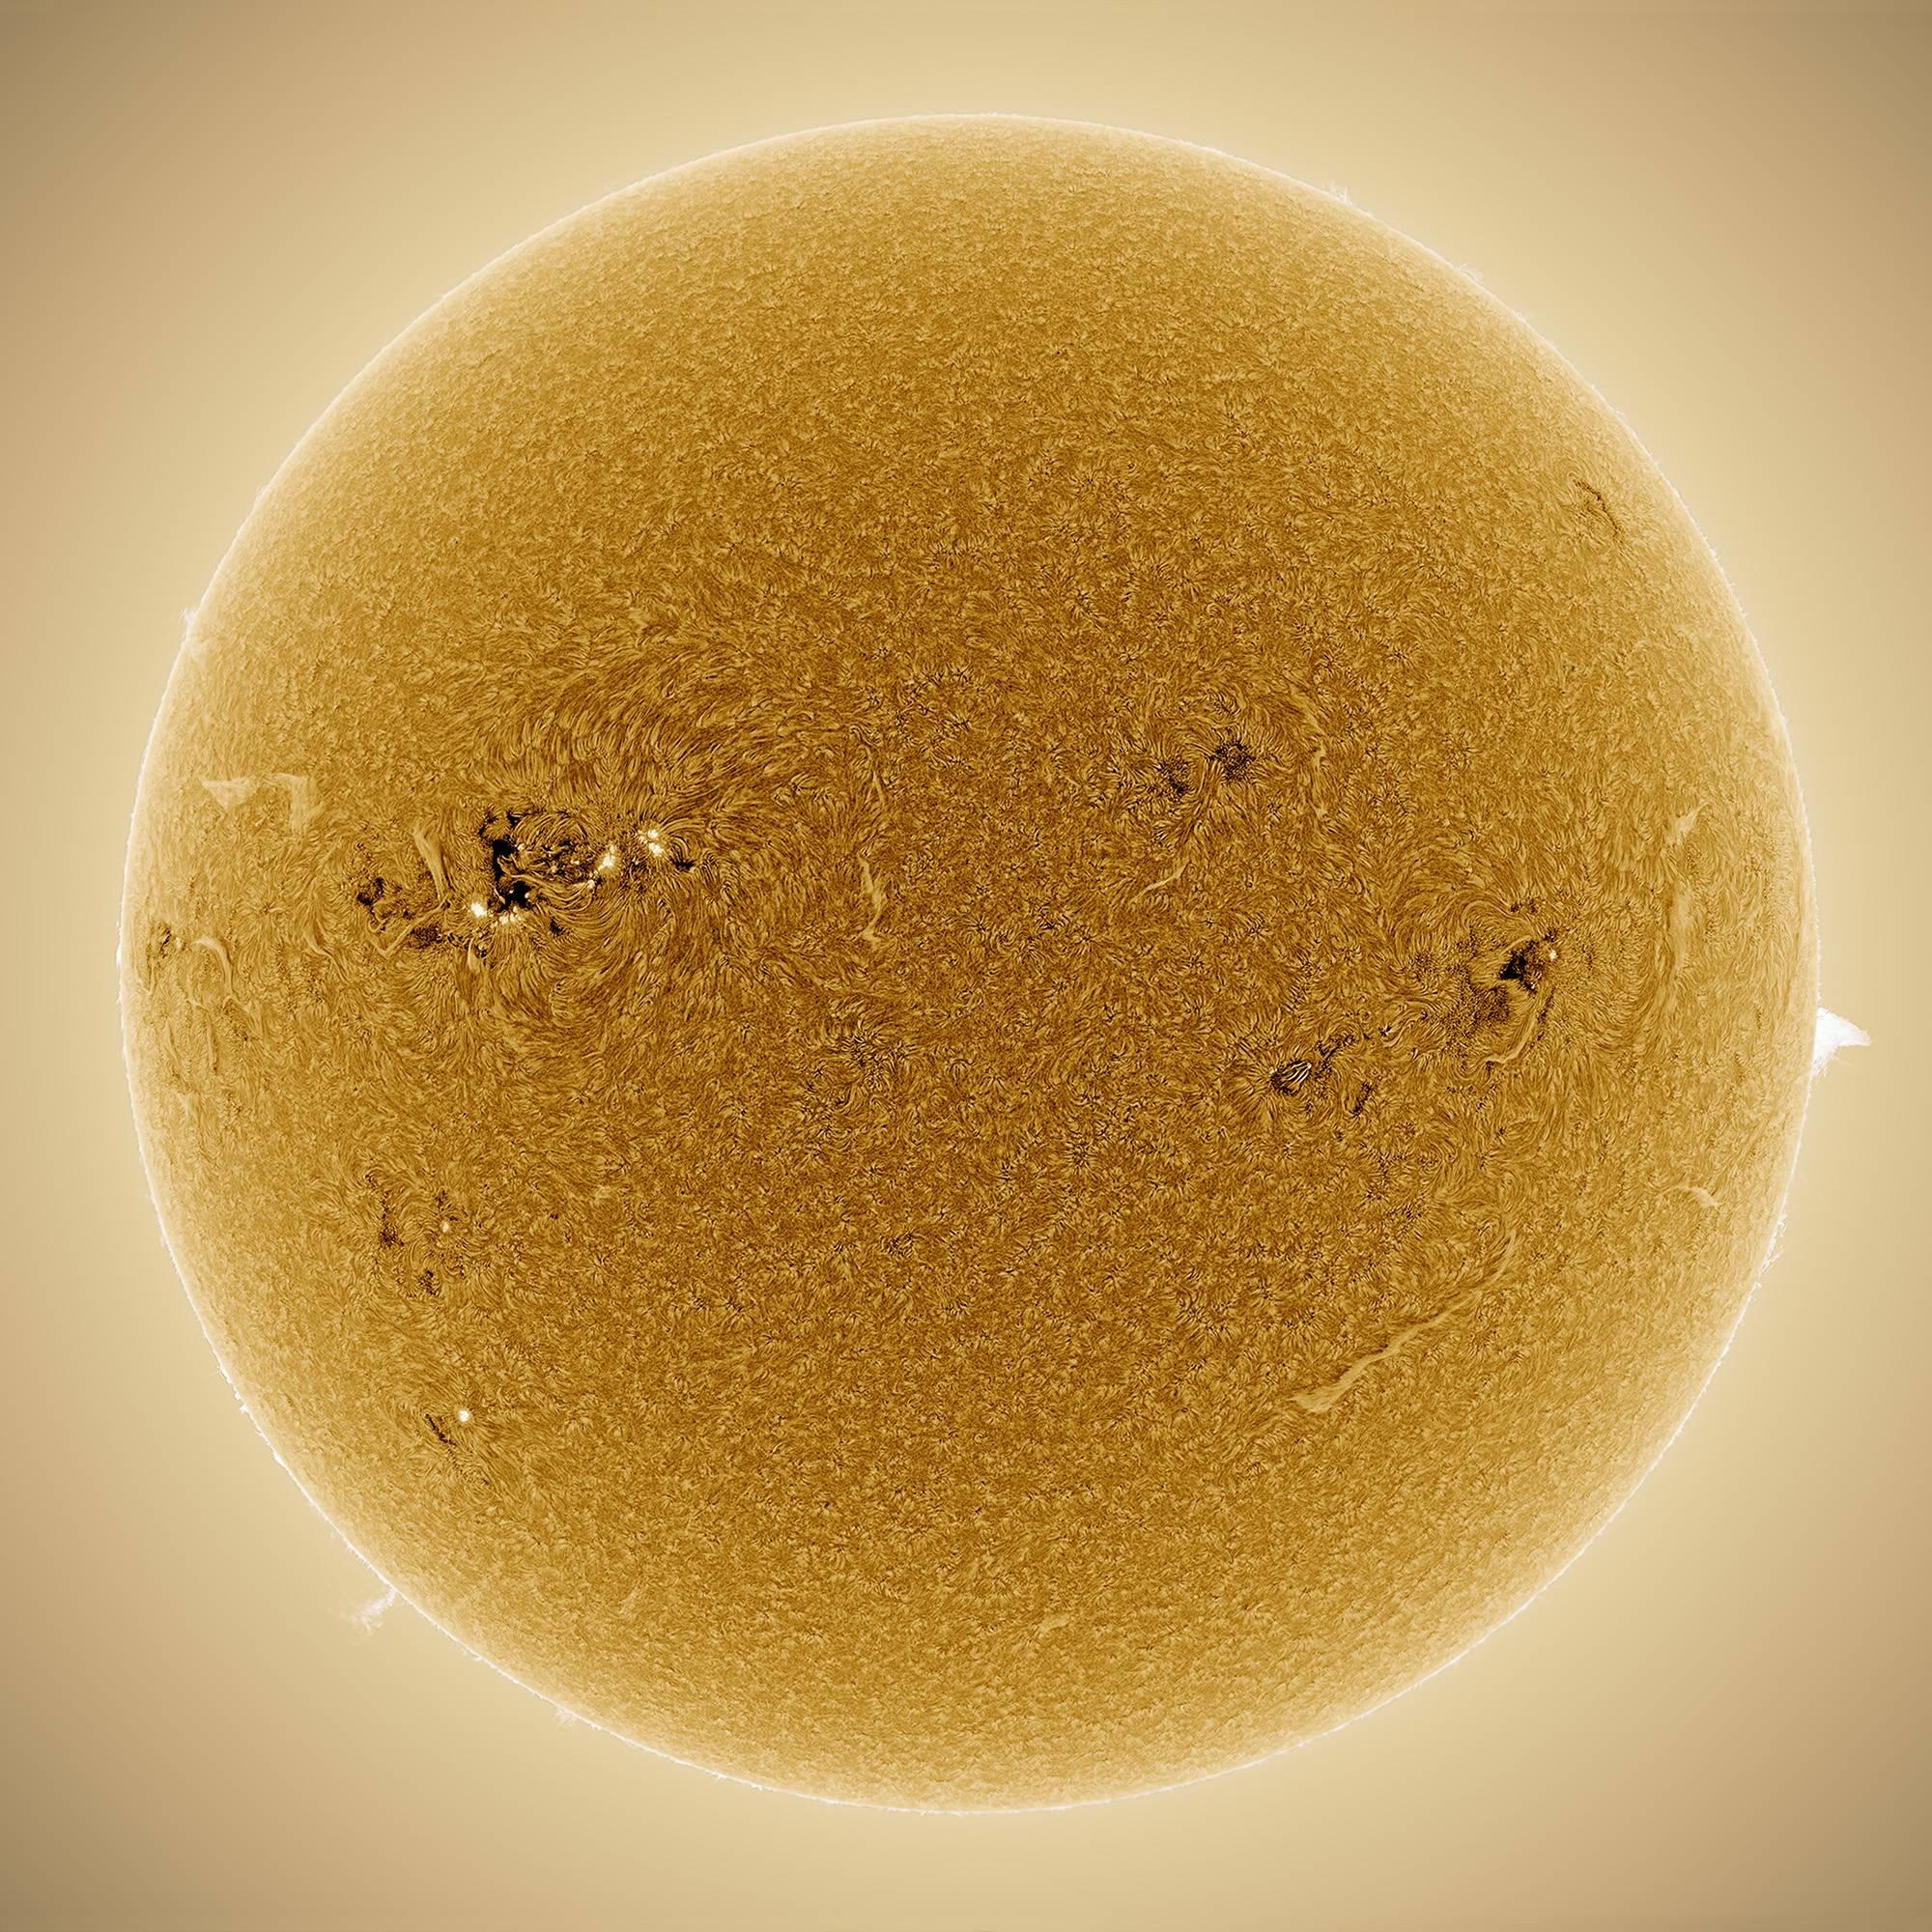 2015 May 9 – Golden Sun - Photograph by Alan Friedman